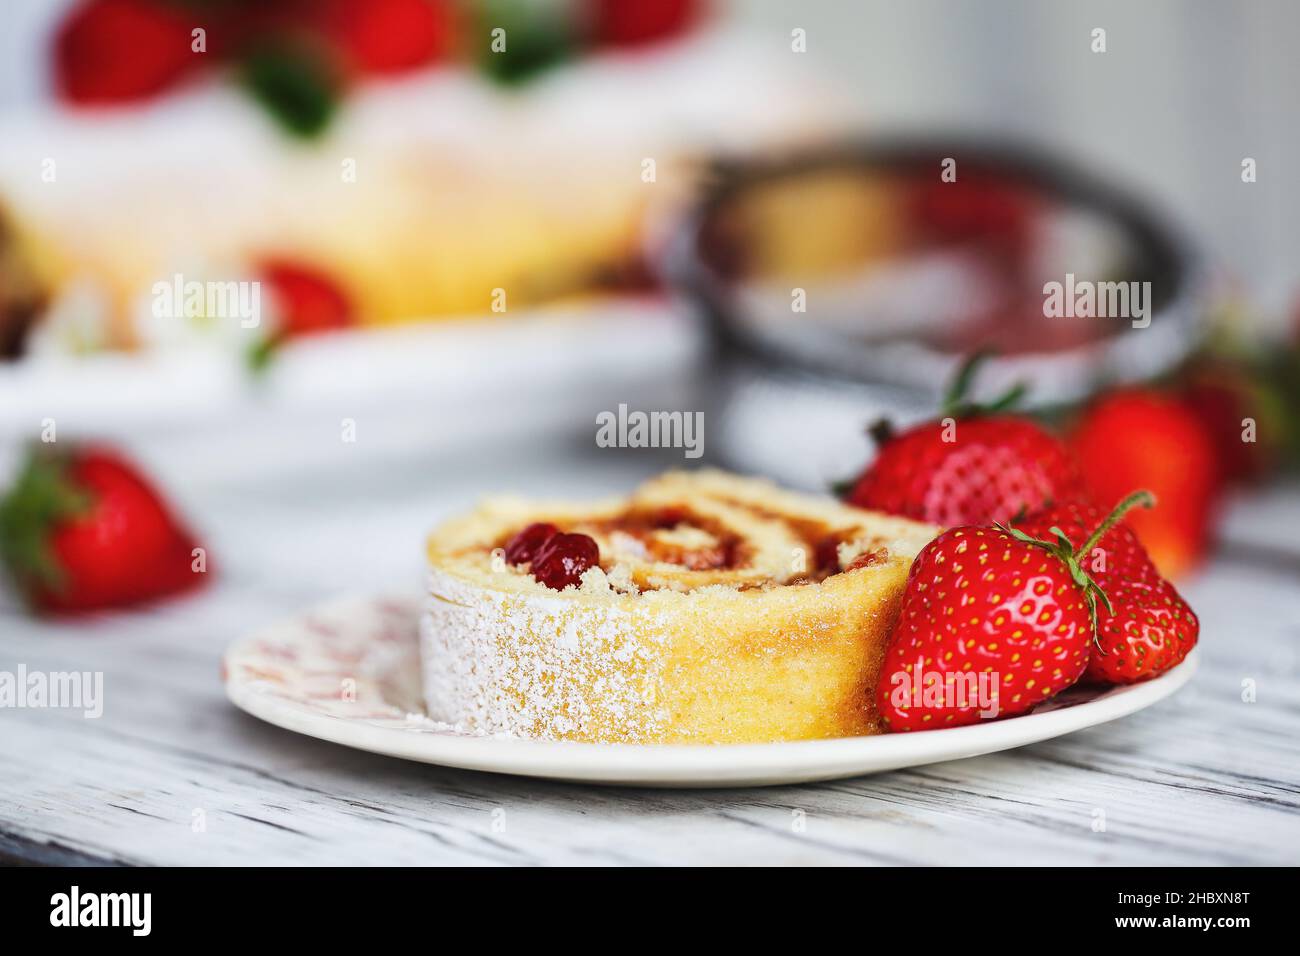 Rollo de pastel de fresas casero o Roulade con relleno de mermelada de bayas y azúcar en polvo con hojas de menta. Postre sobre una tta de madera rústica blanca Foto de stock